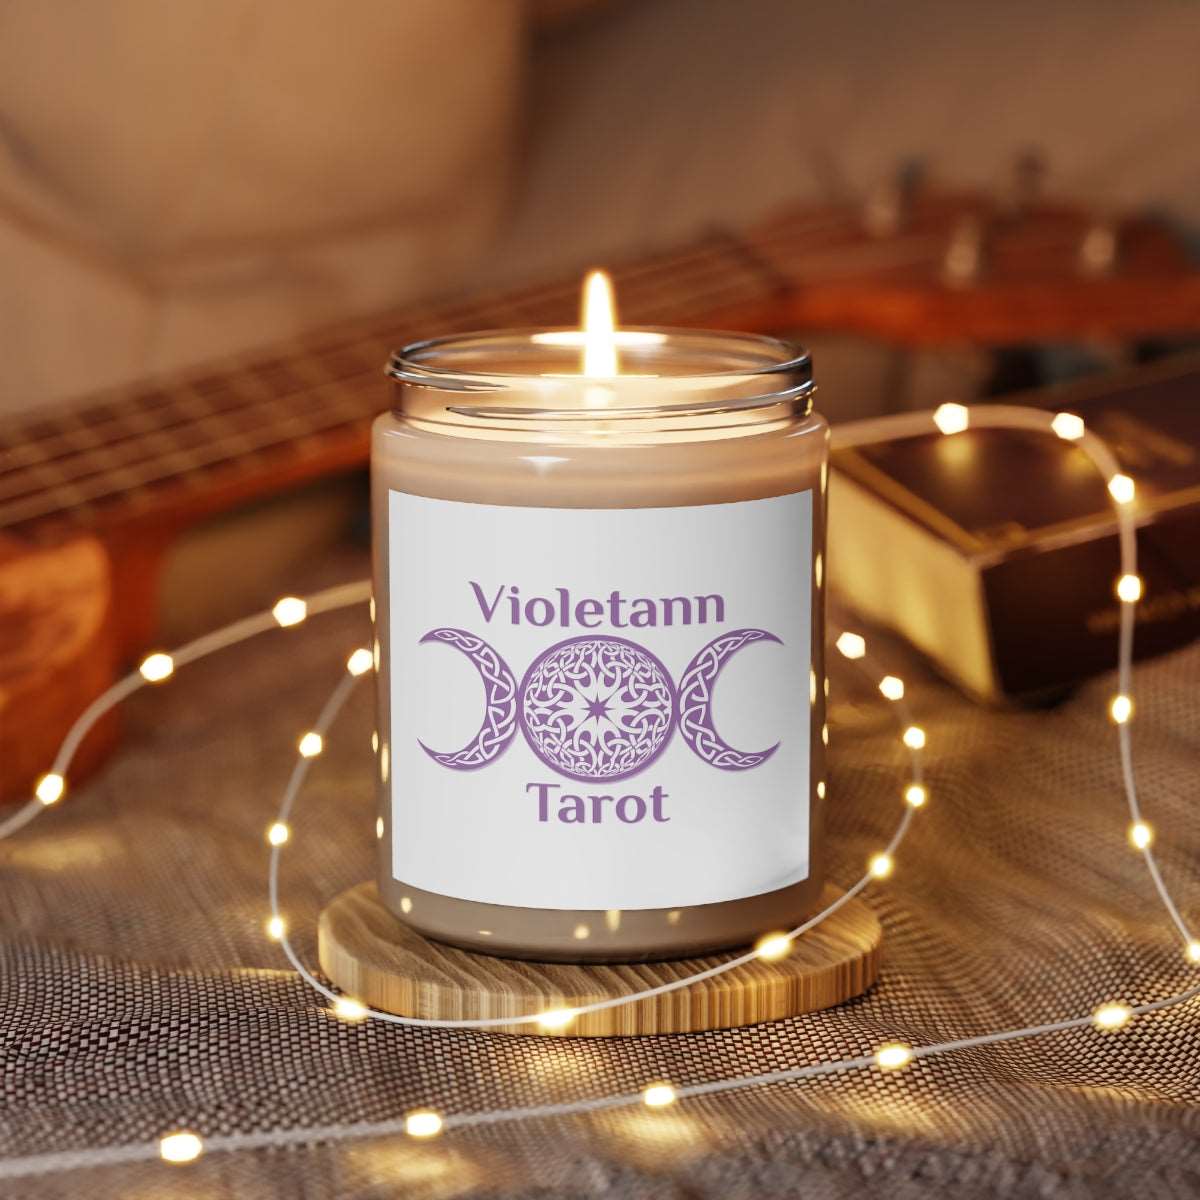 Violetann Tarot Logo - Scented Candle, 9oz